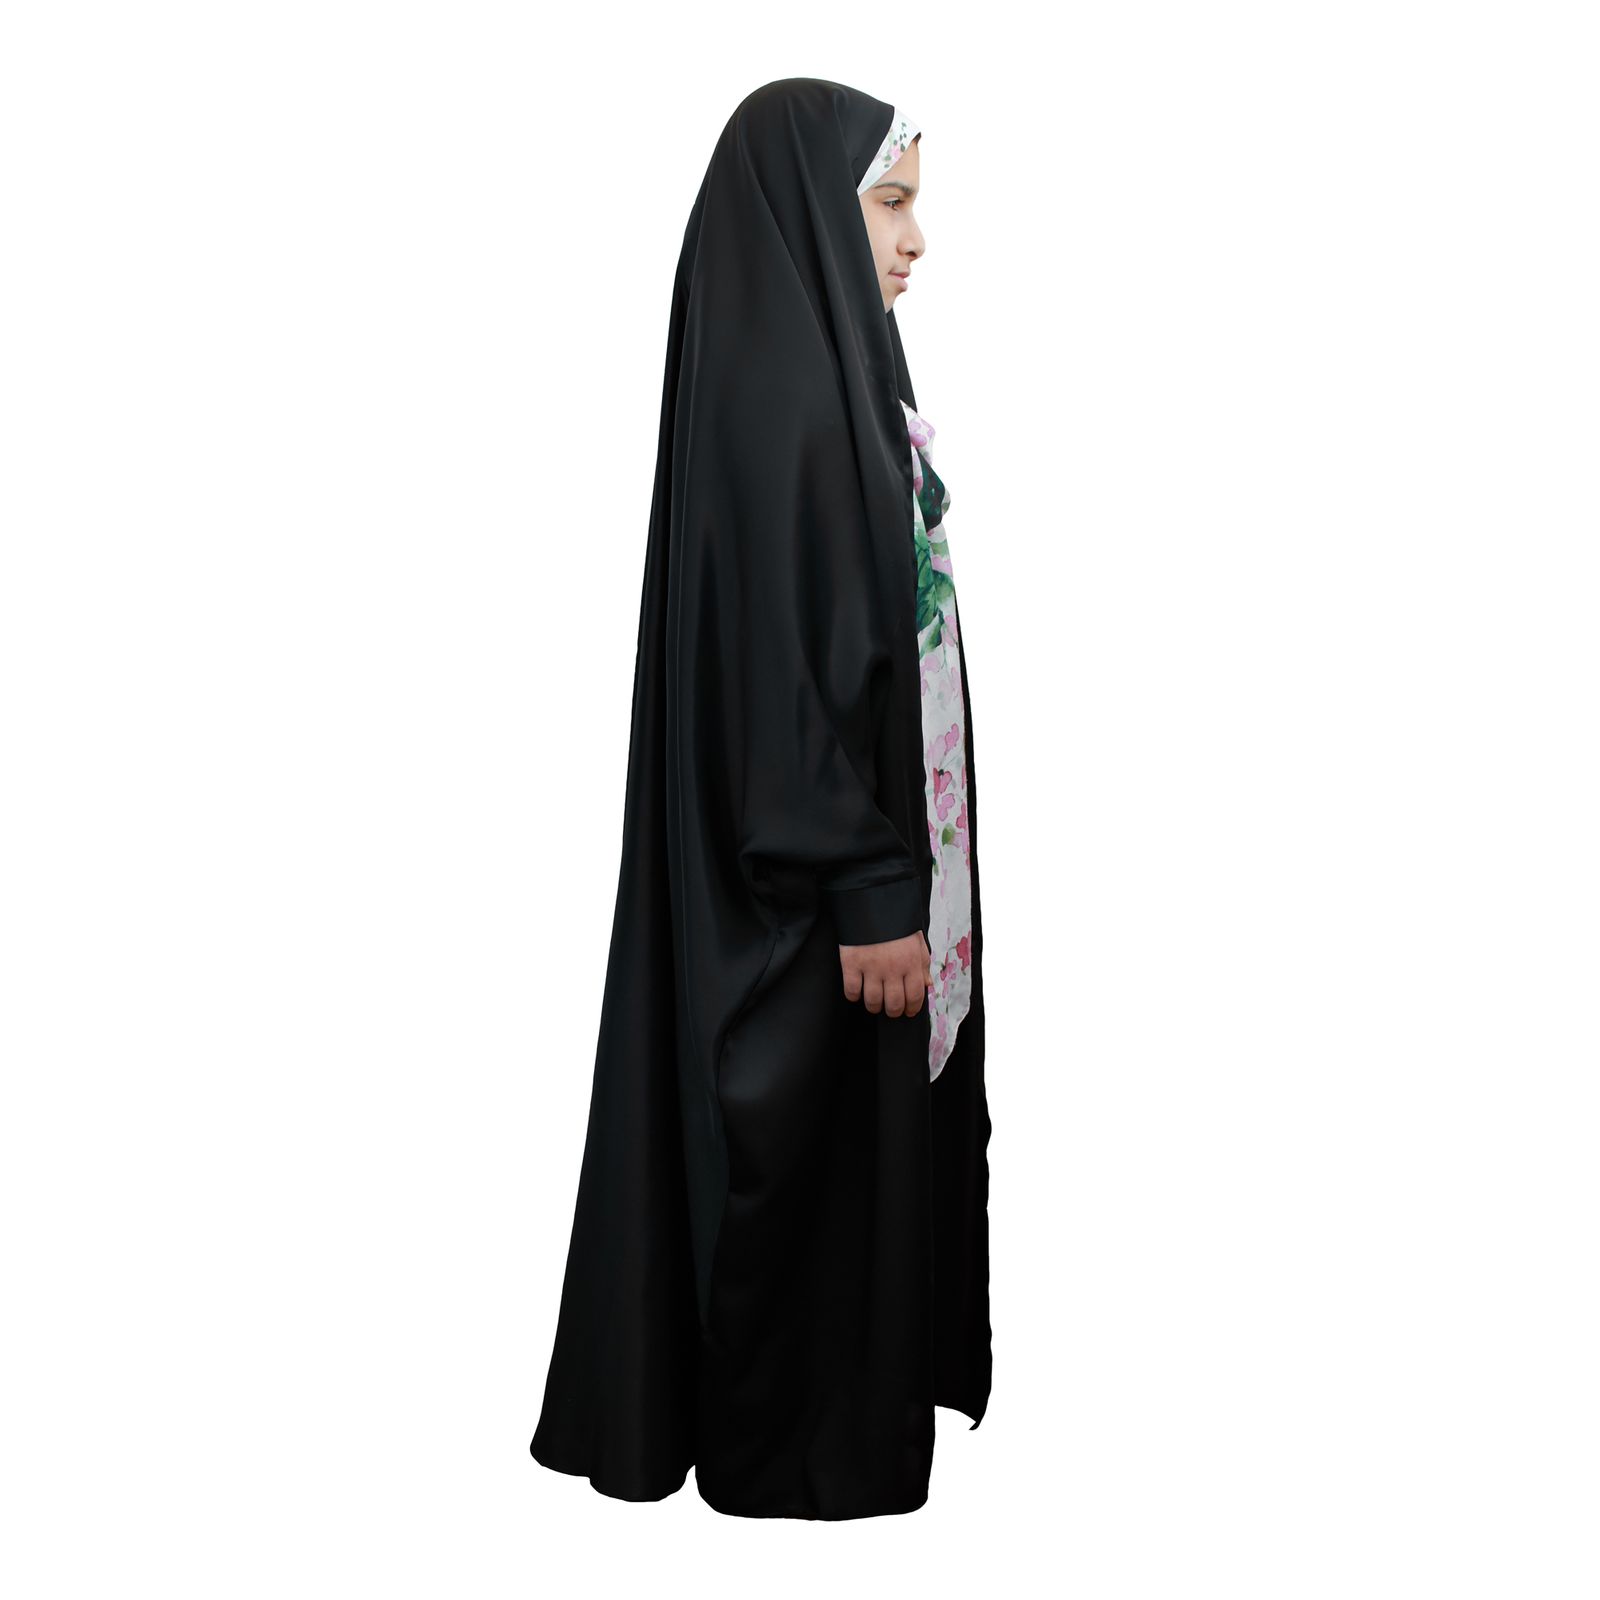 چادر دانشجویی دخترانه حجاب فاطمی کد sat09 -  - 3